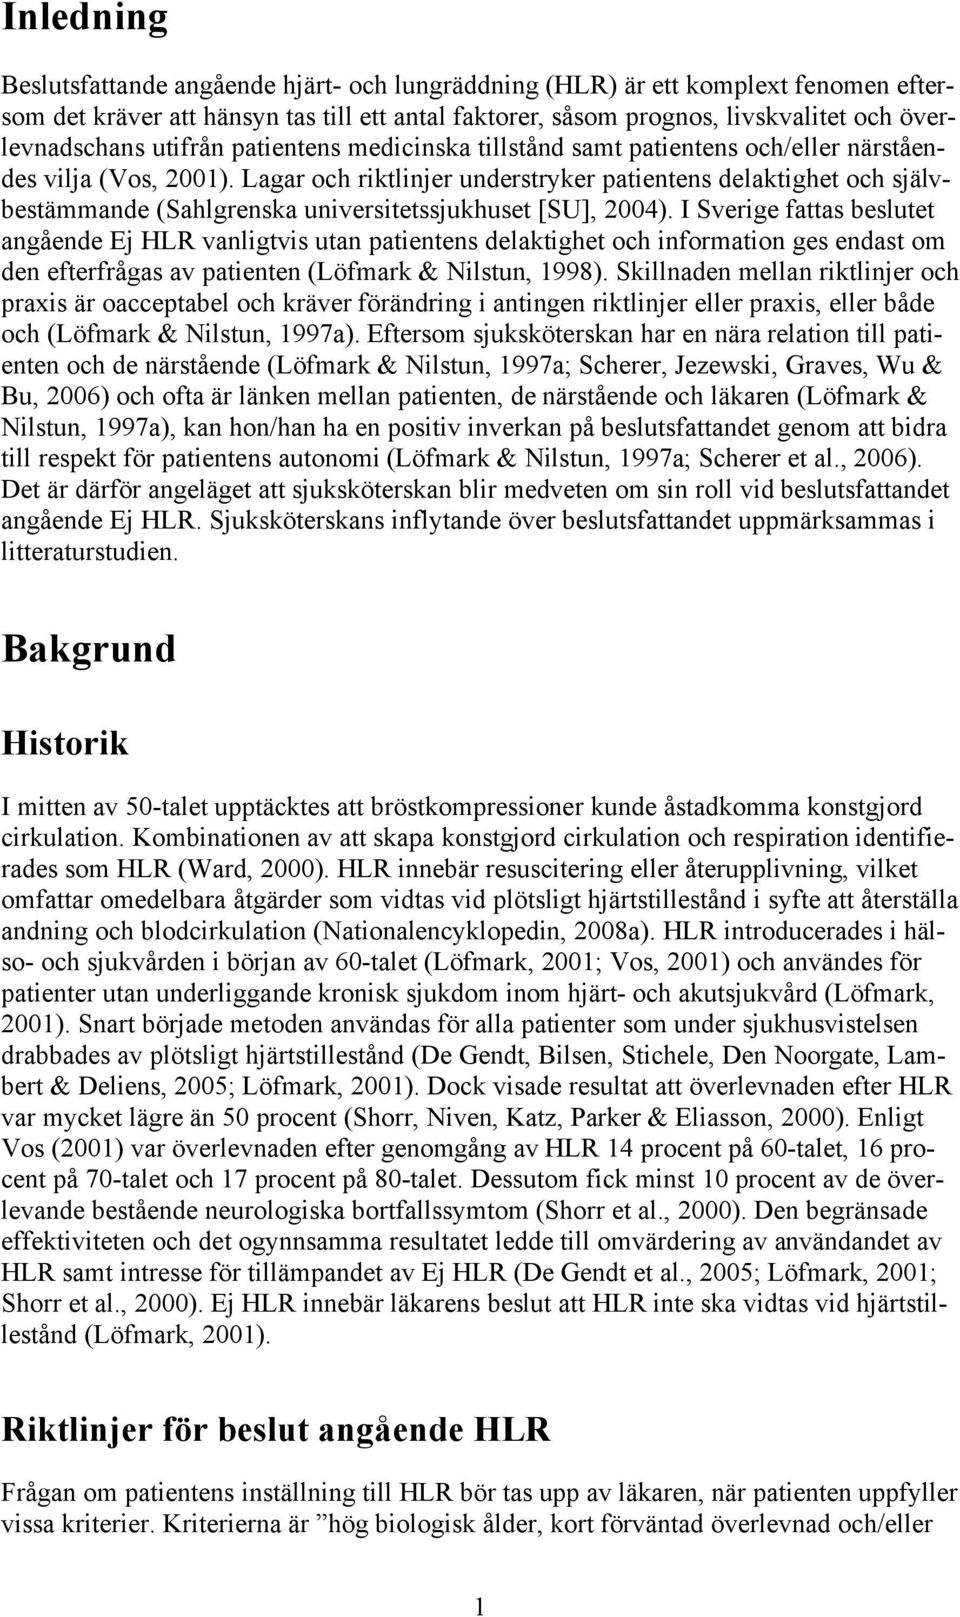 Lagar och riktlinjer understryker patientens delaktighet och självbestämmande (Sahlgrenska universitetssjukhuset [SU], 2004).